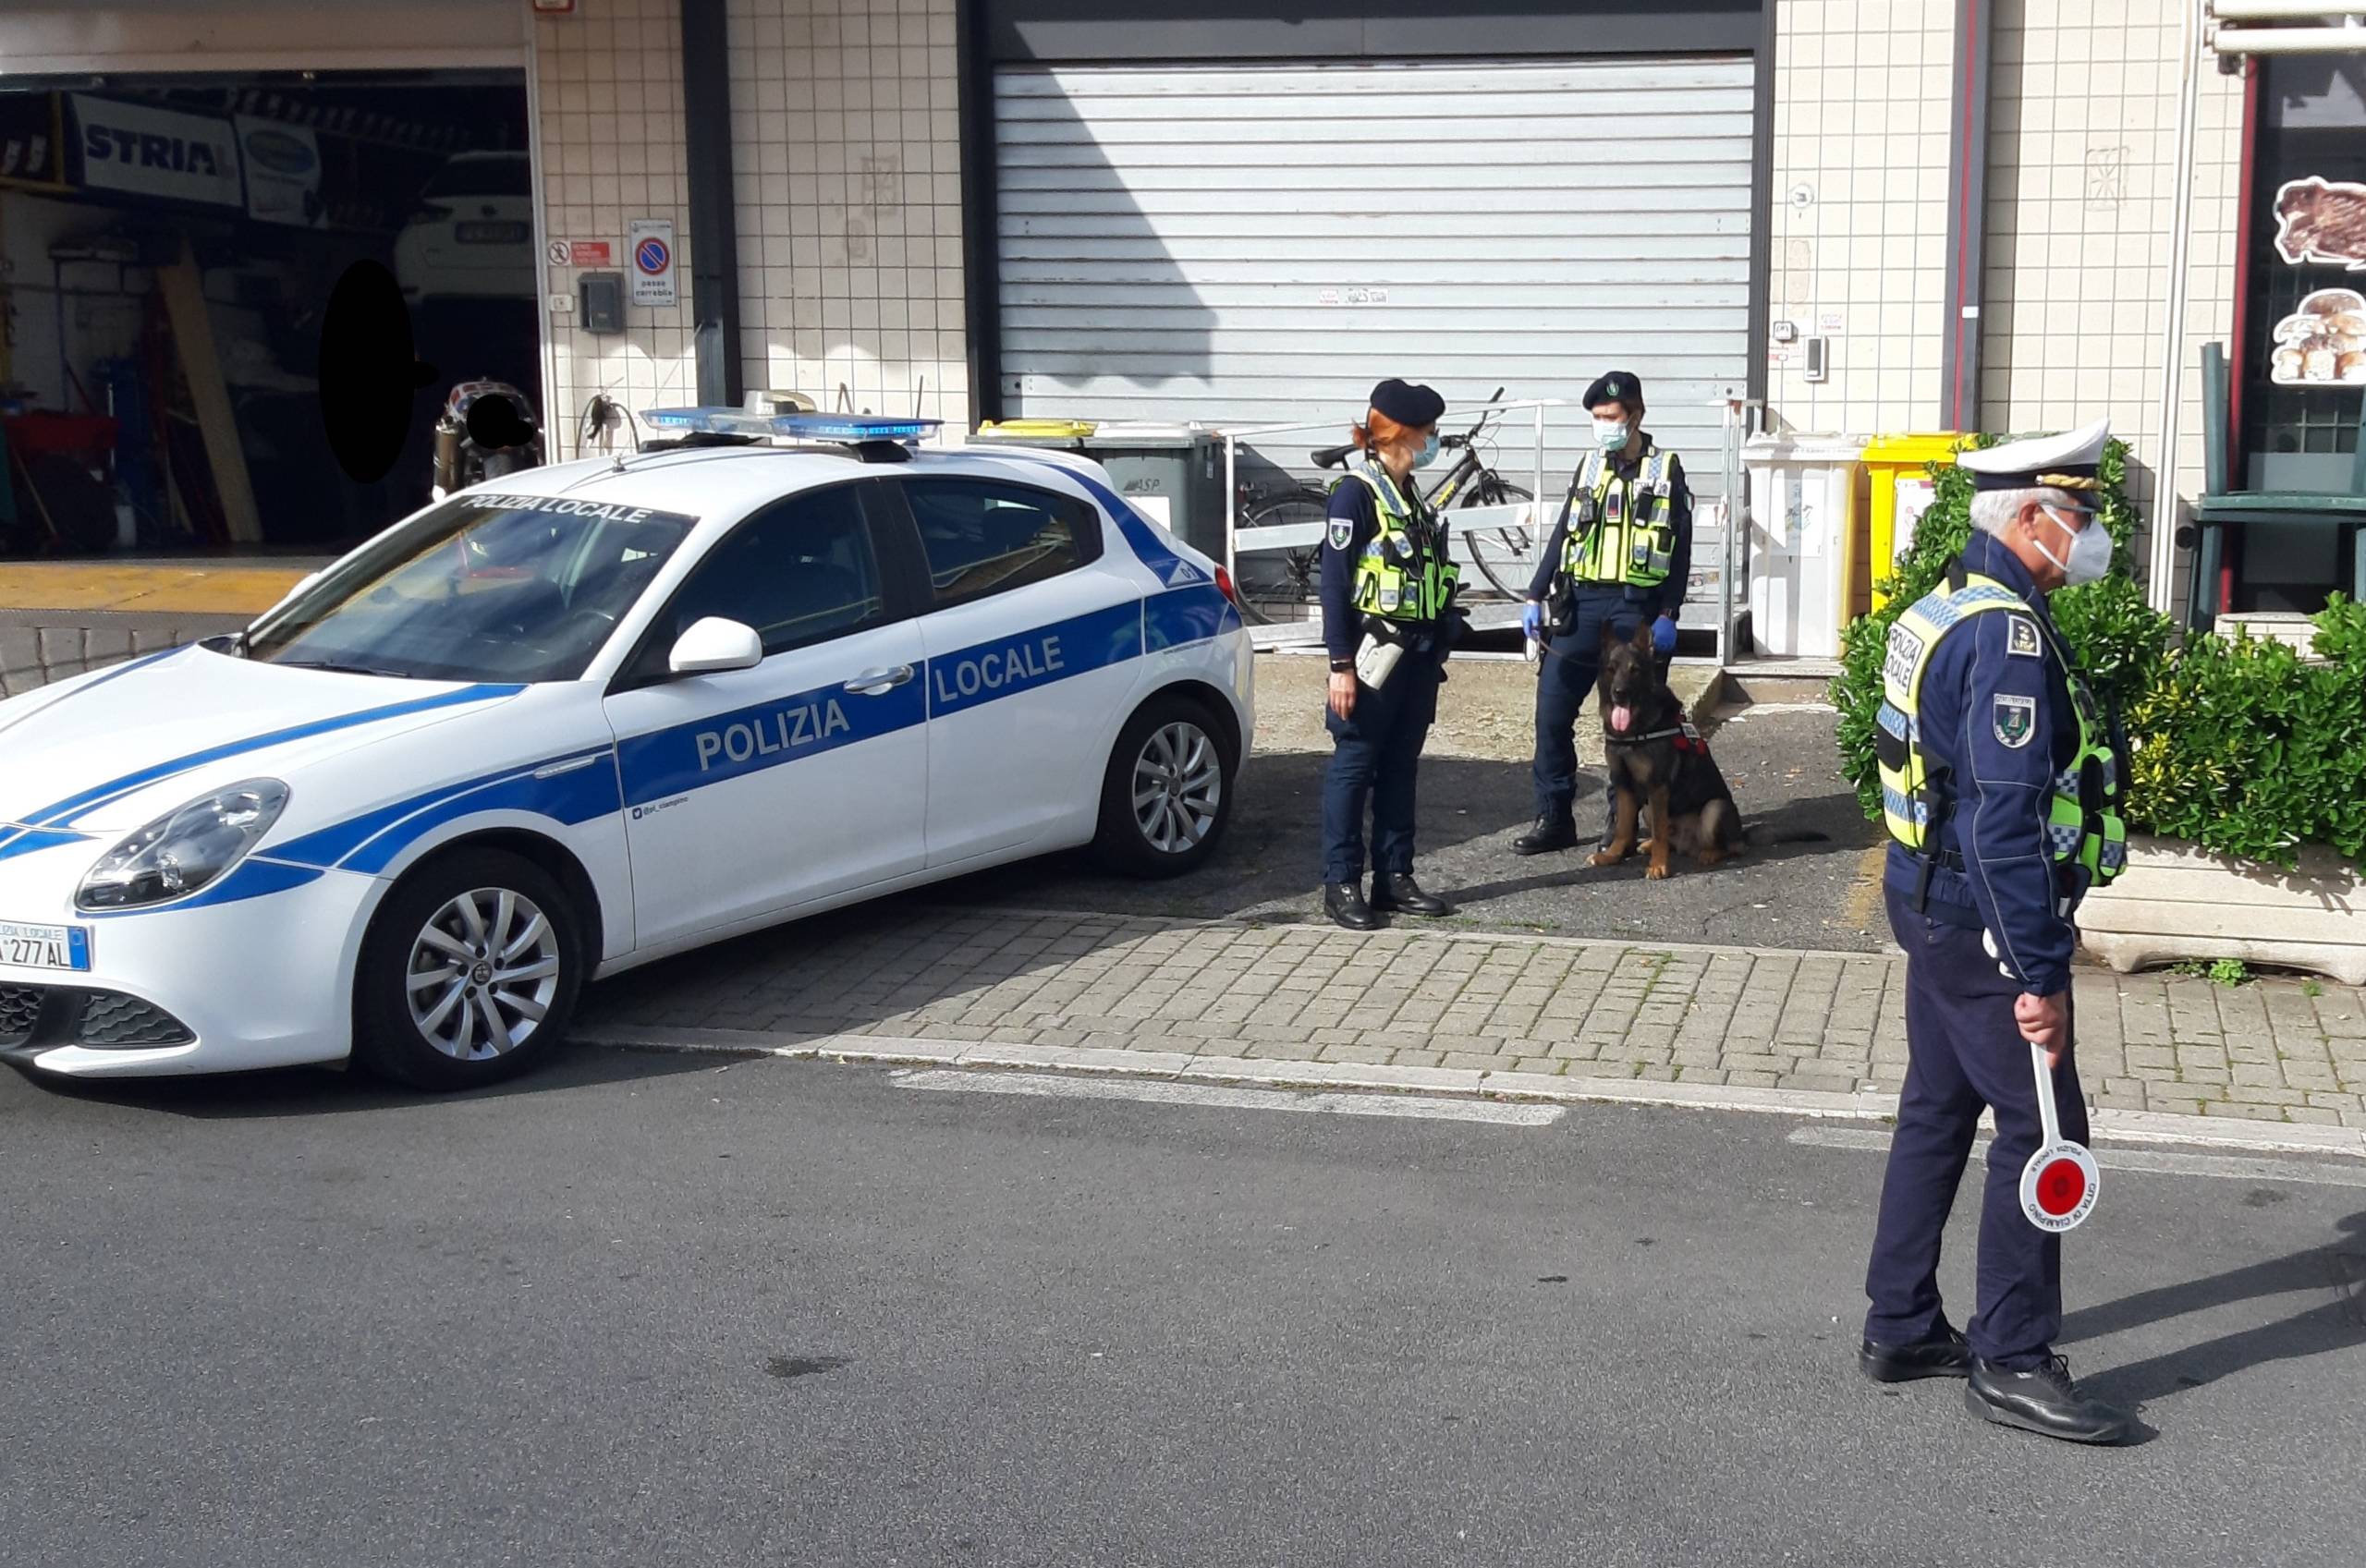 Pattuglia della Polizia Locale di Ciampino intervenuta per il doppio incidente in centro